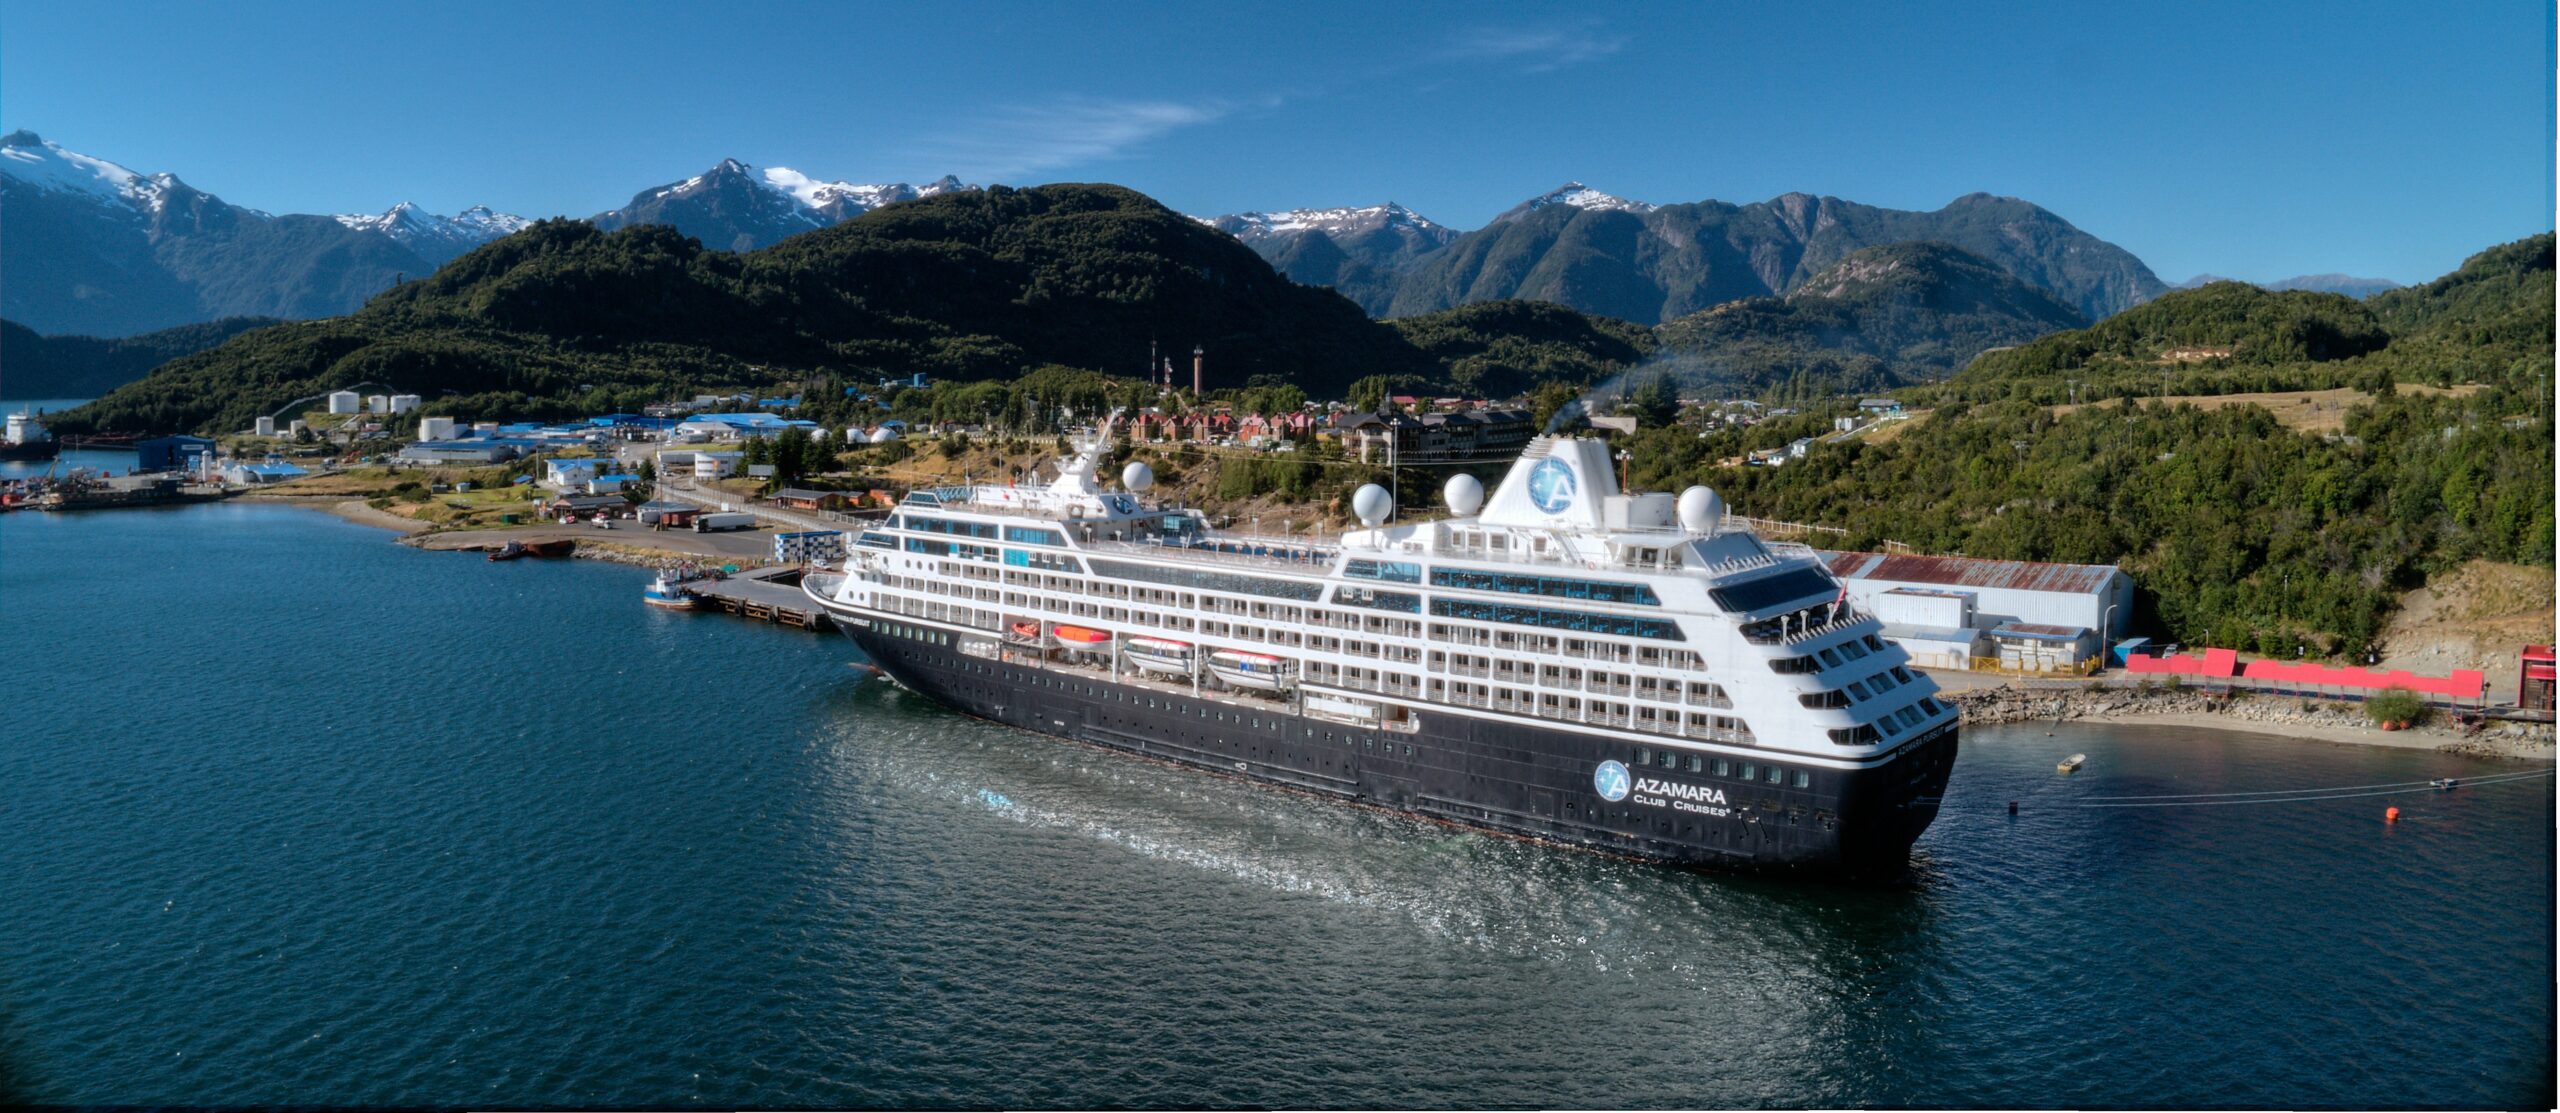 Et Azamara-cruiseskip ligger til havn i Chacabuco, Chile. Foto.